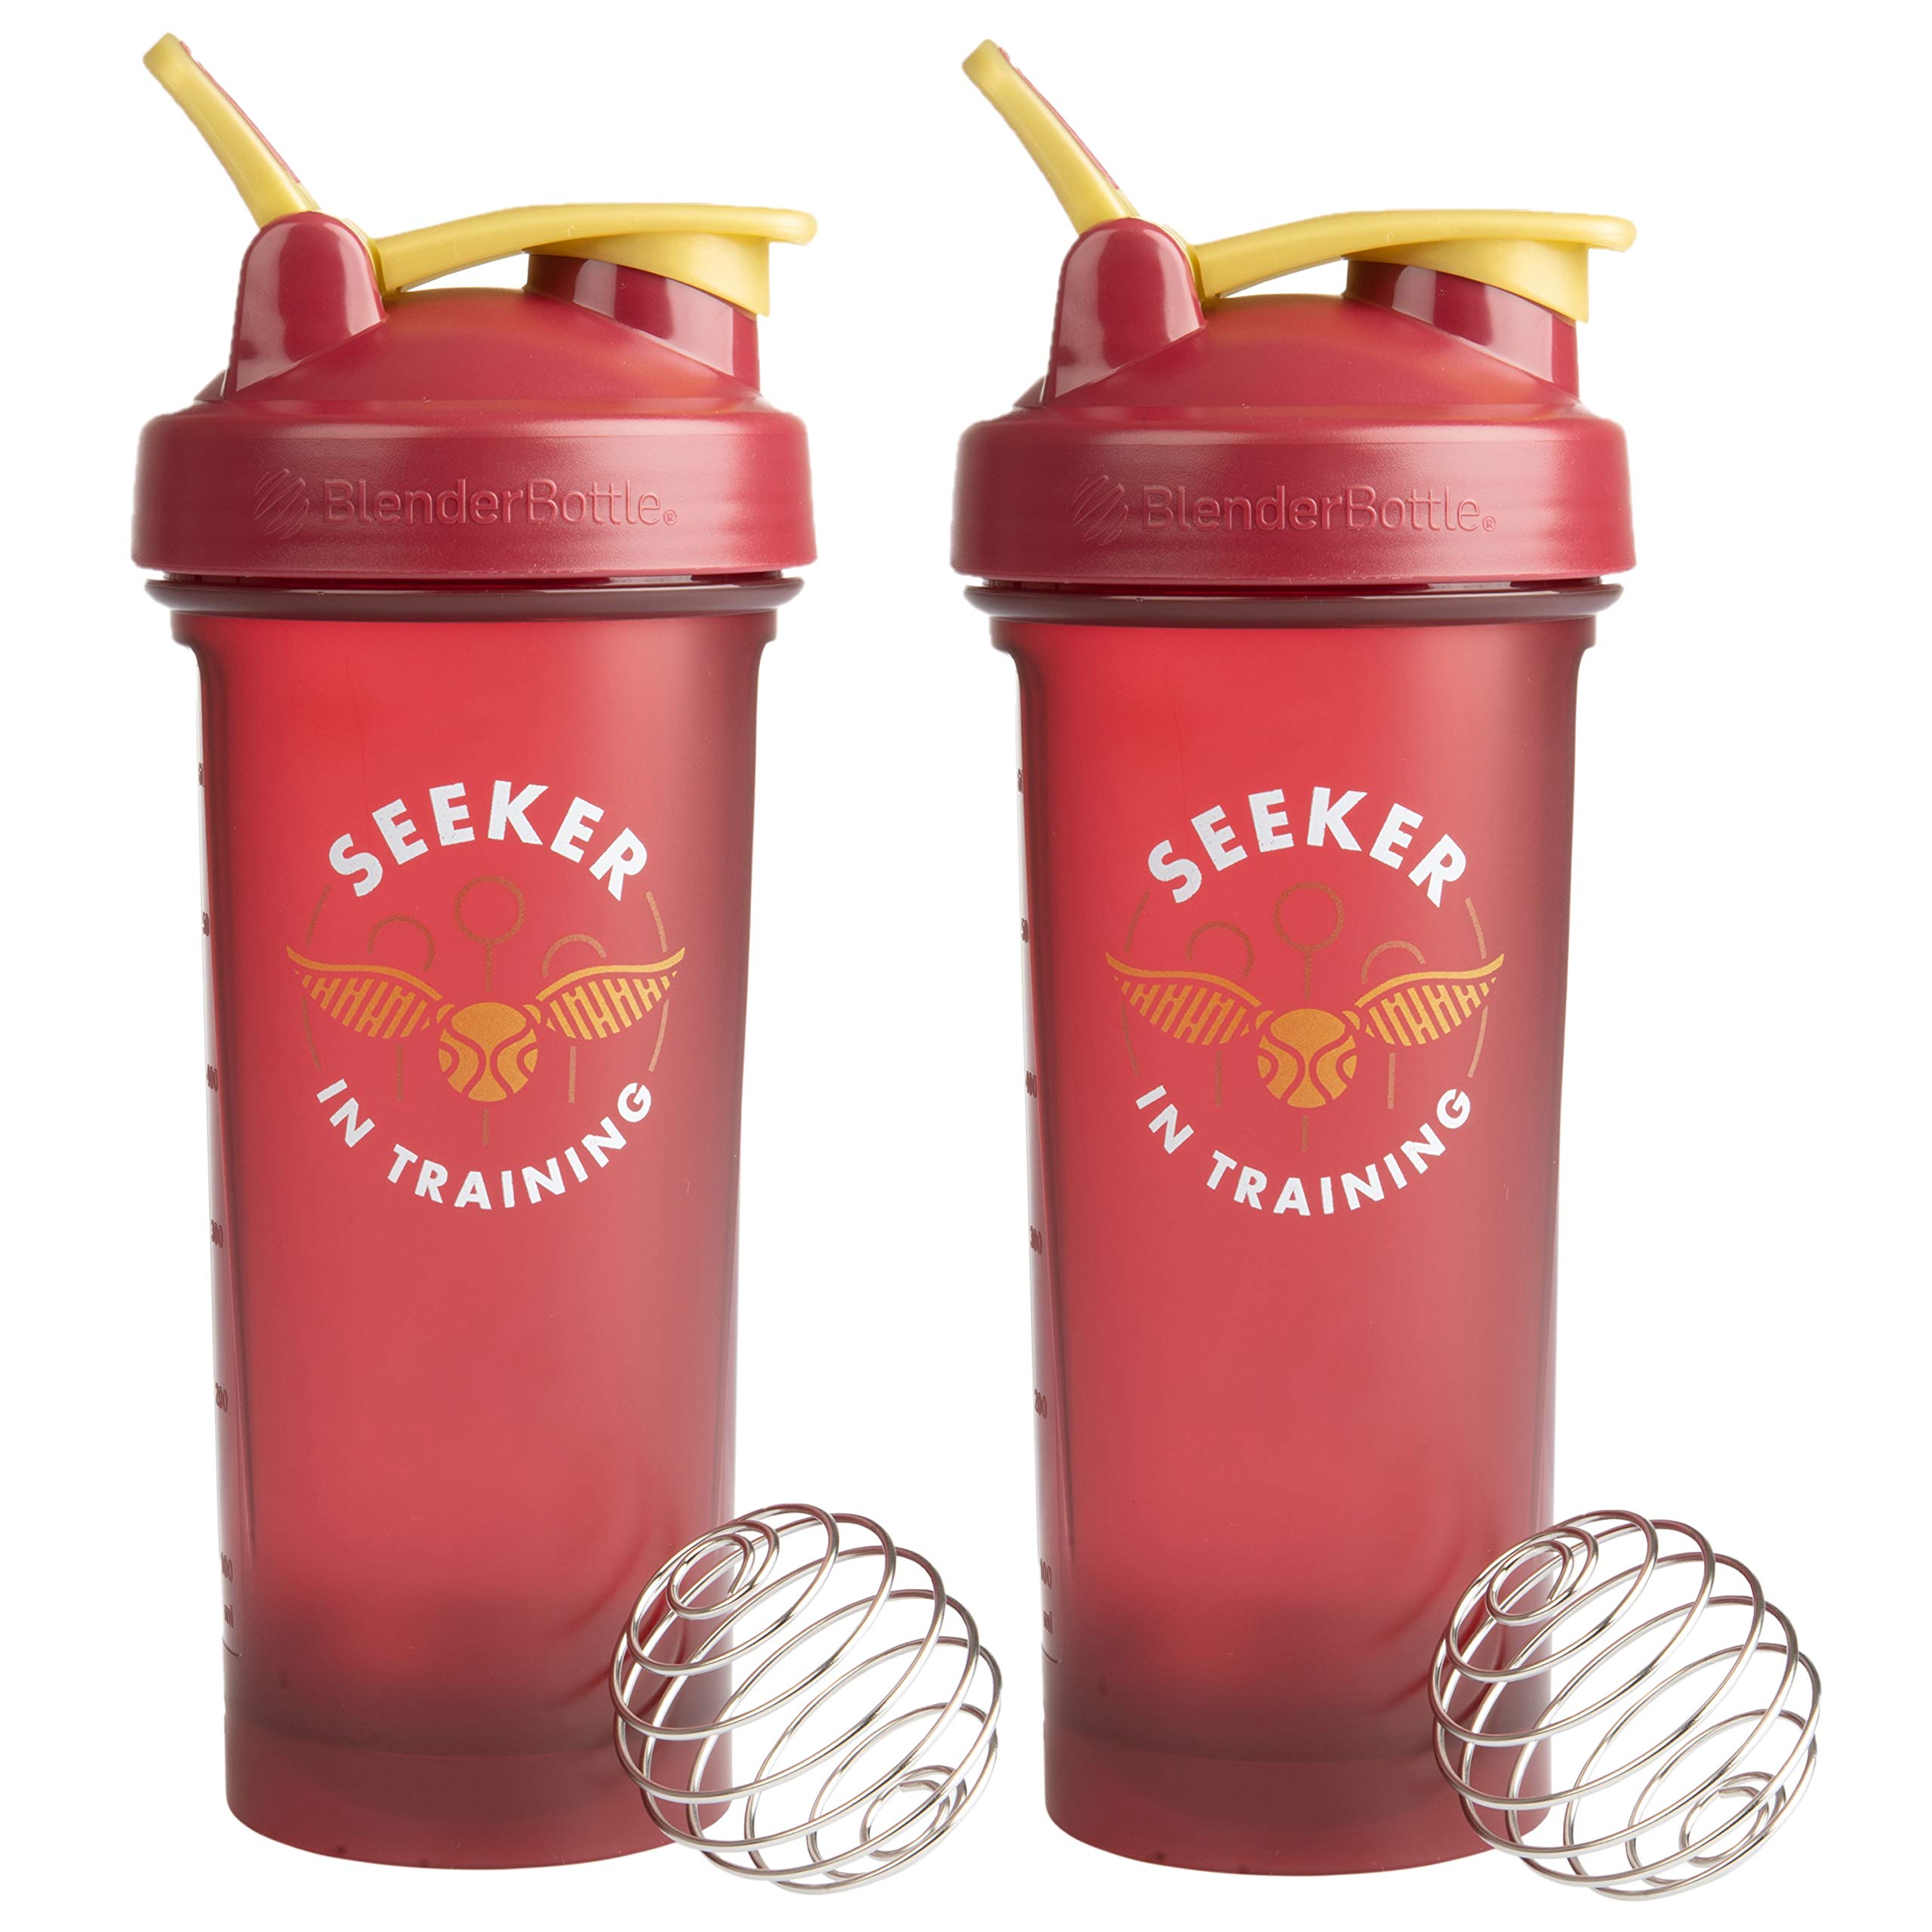 Harry Potter BlenderBottle Shaker Bottle 2-Pack - Seeker in Training 28oz -  BlenderBall Wisk Mixer Ball - Blend Protein Powder Sport Drinks Shakes  Smoothies & More